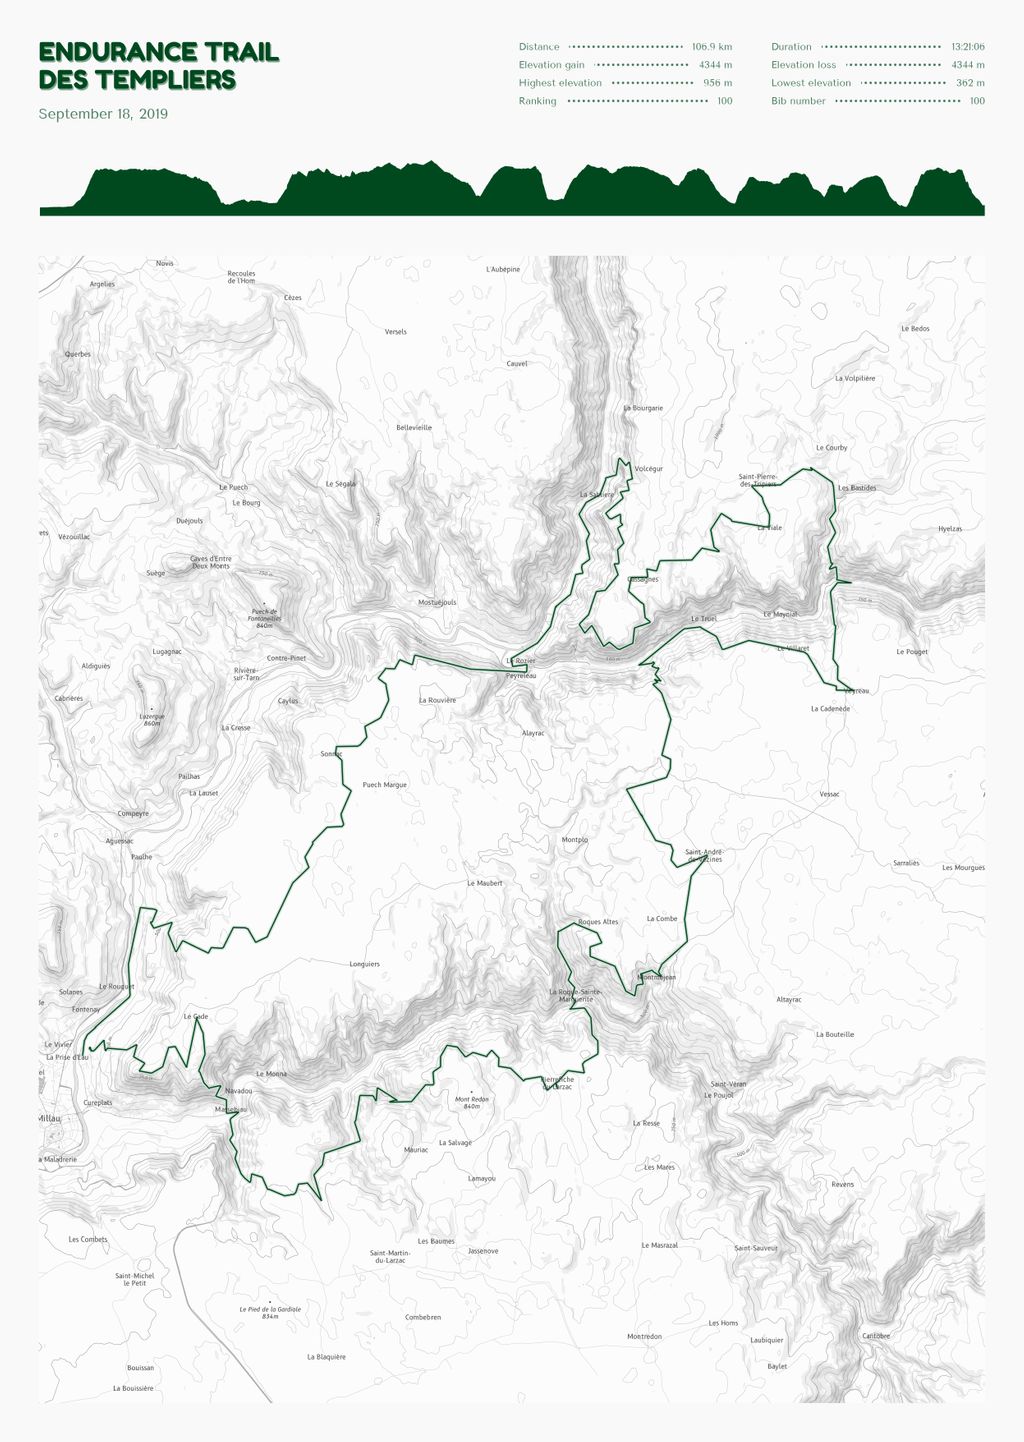 Póster con un mapa de Endurance Trail 
des Templiers